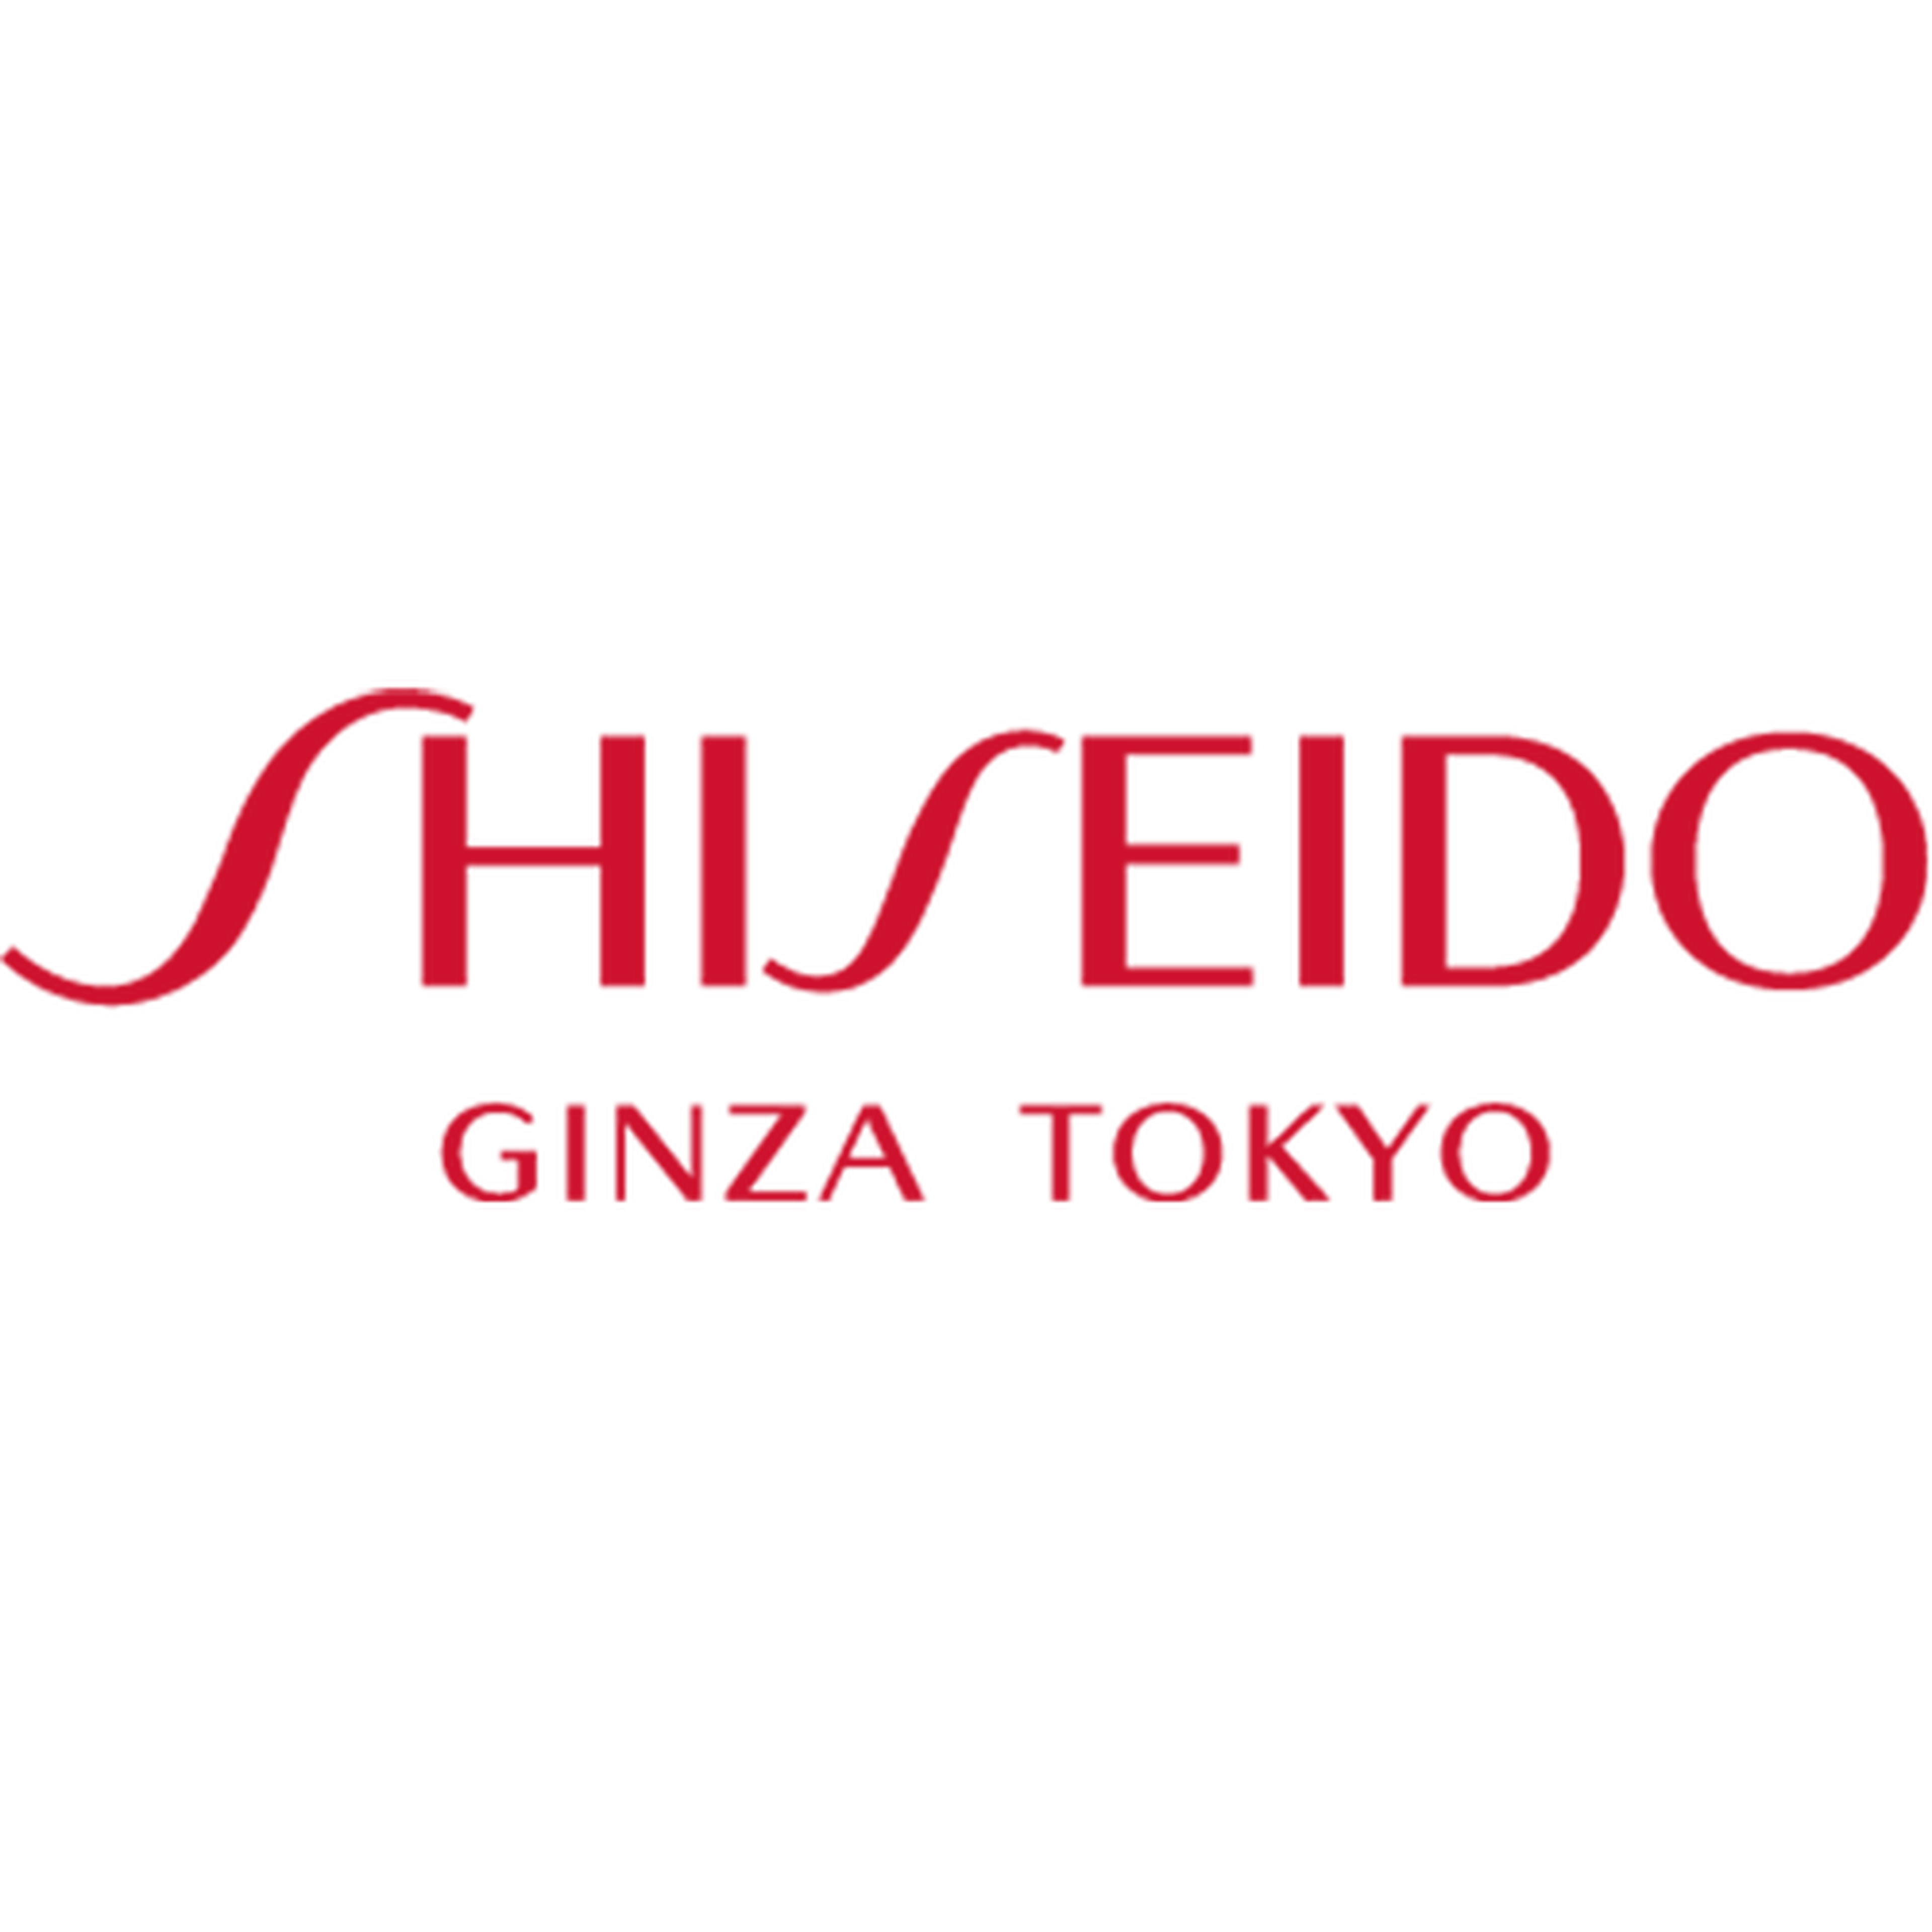 Shiseido logotype